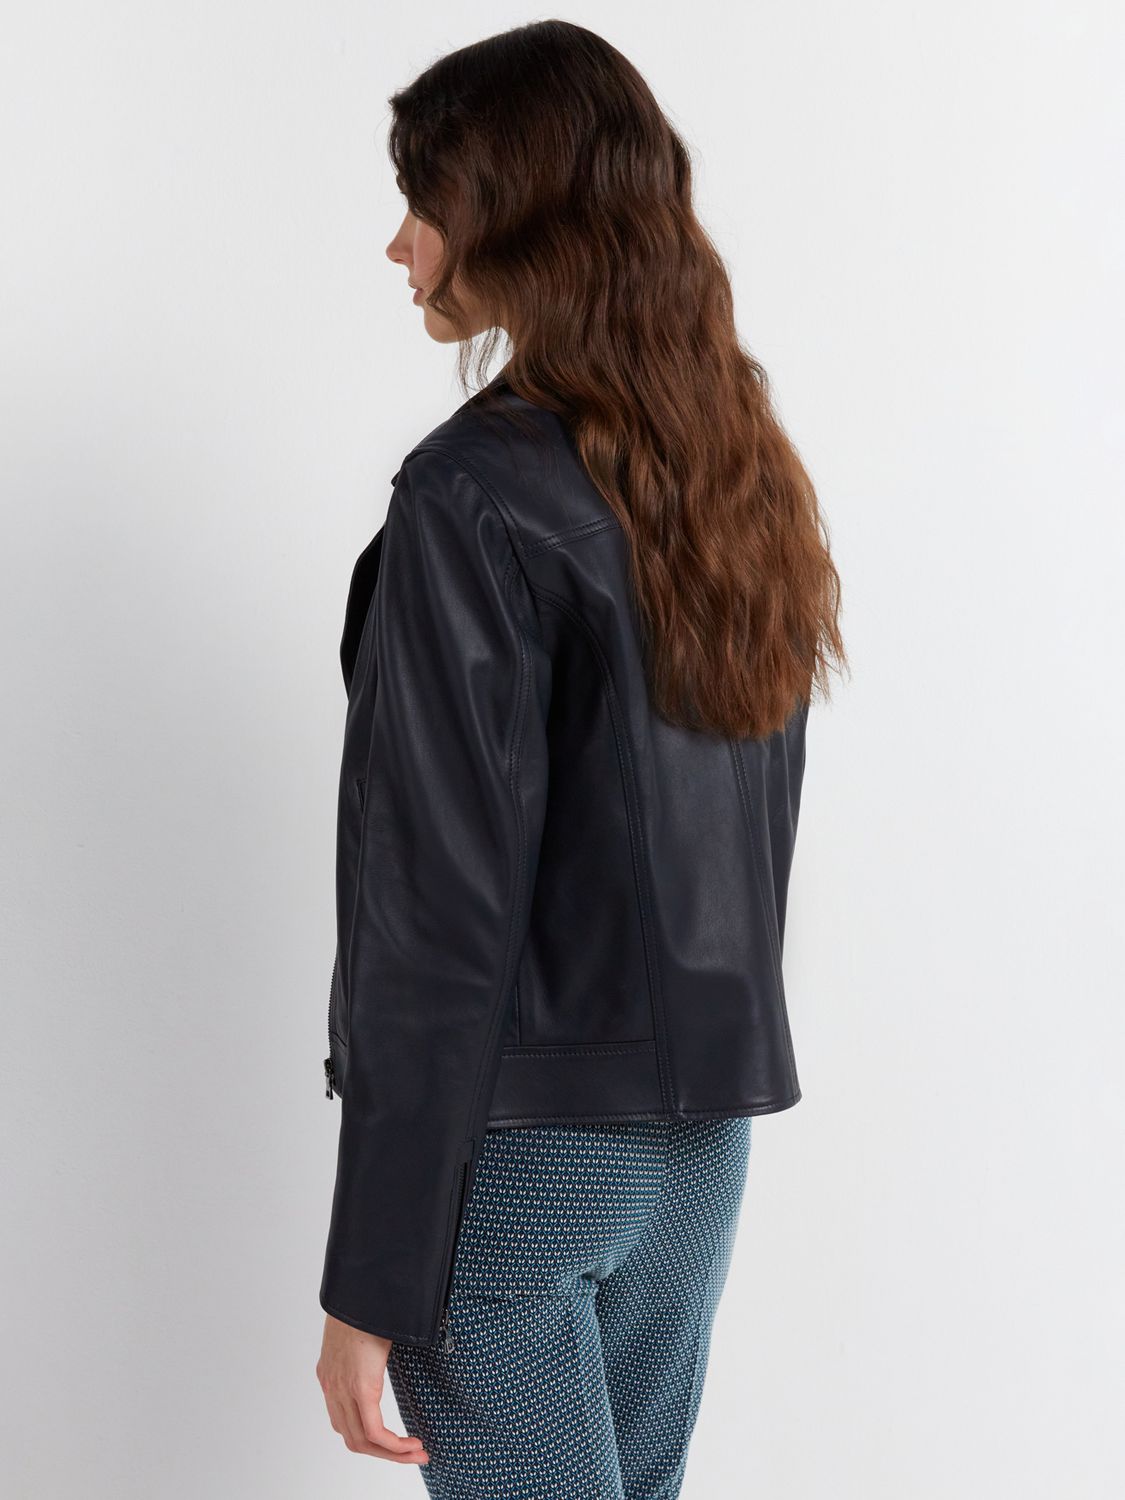 Buy Gerard Darel Maena Leather Jacket, Navy Online at johnlewis.com